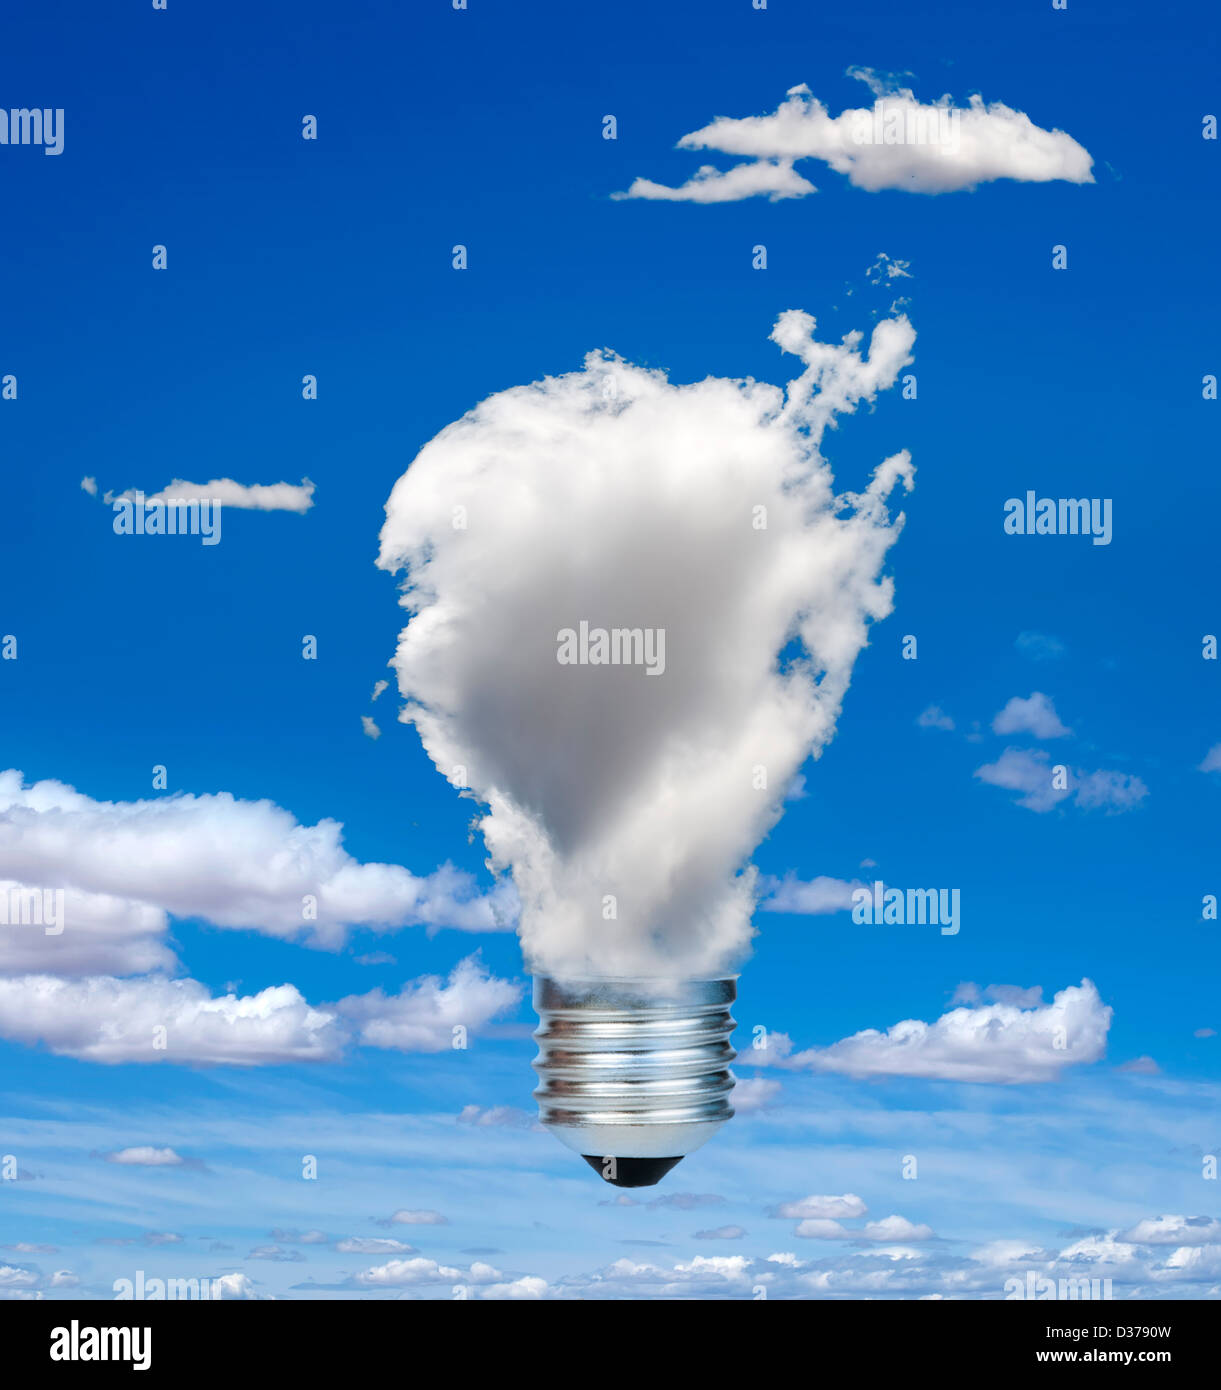 Lampe aus Wolken. Ökologie-Konzeption. Blauer Himmel. Stockfoto